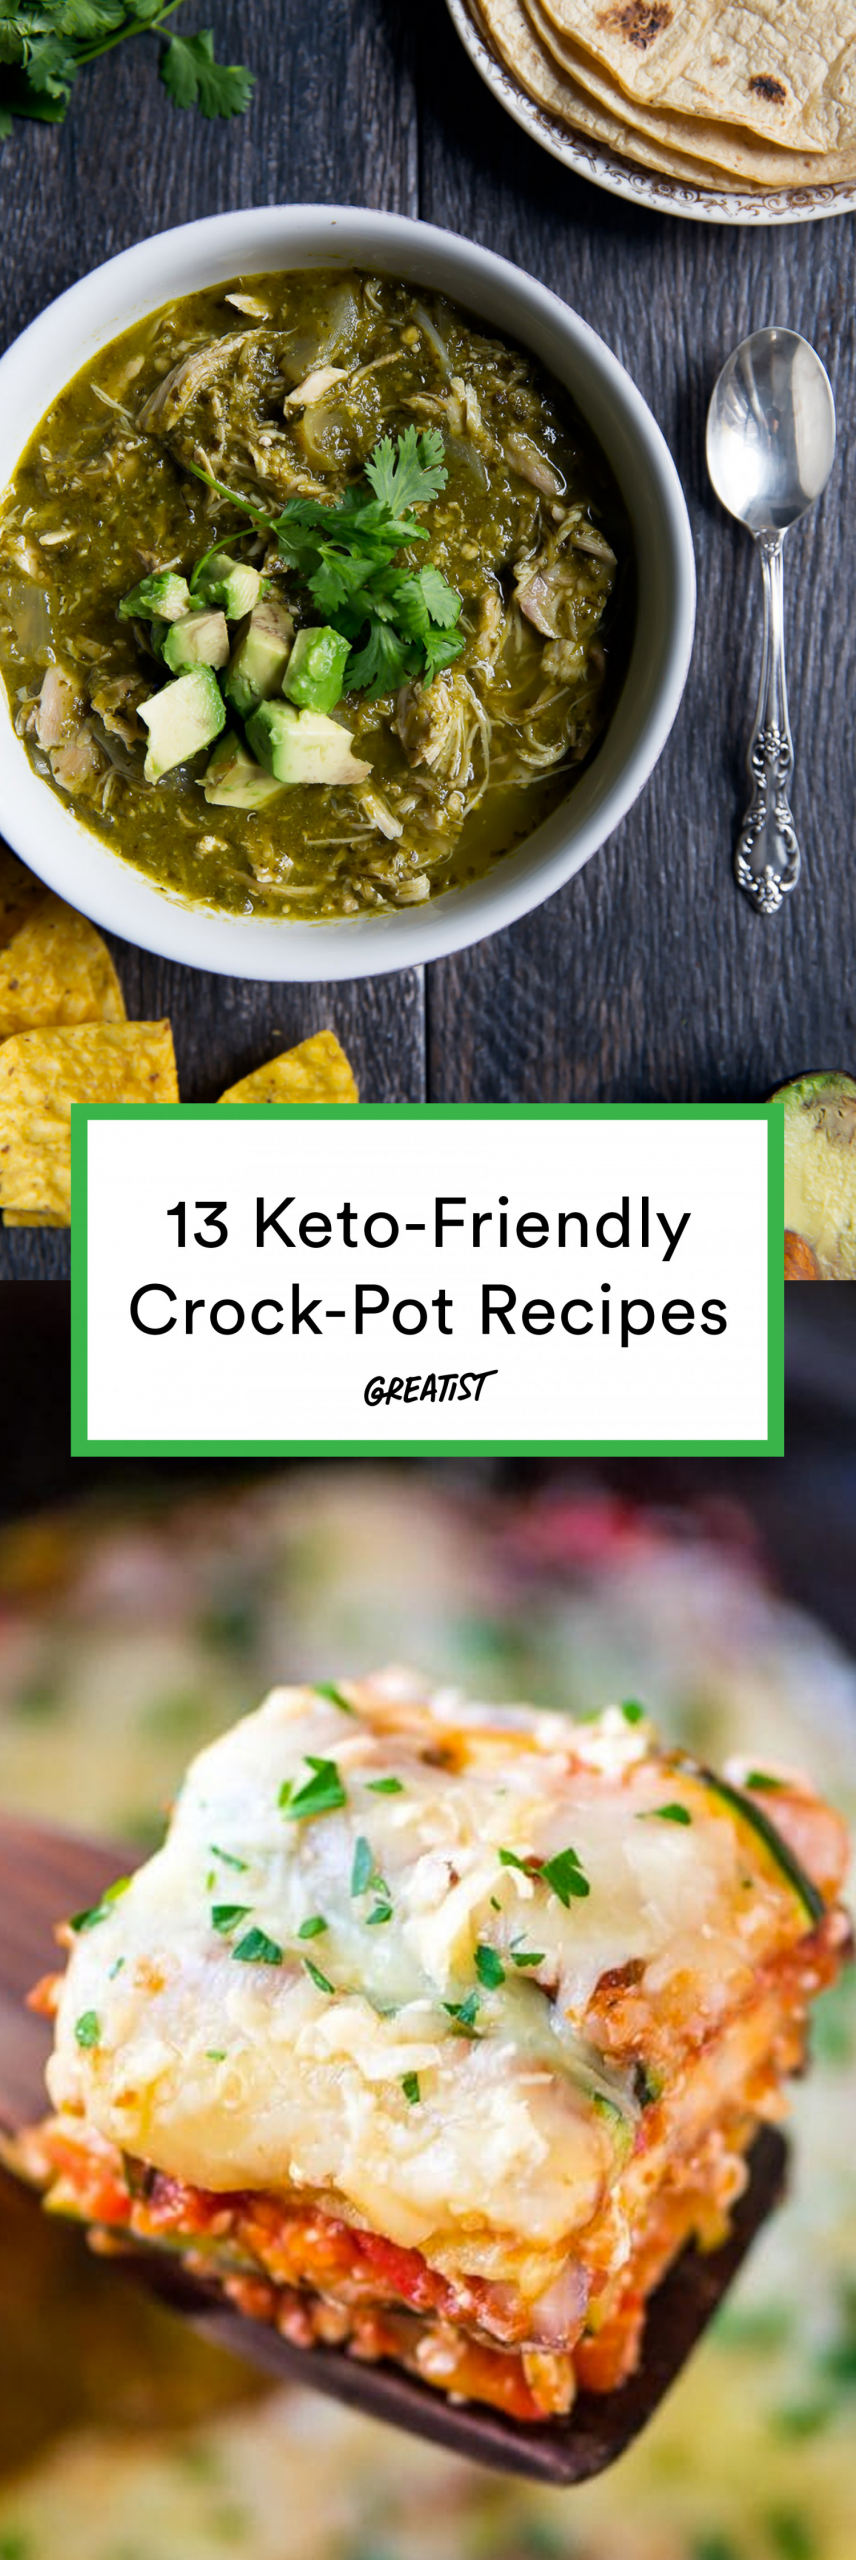 Clean Keto Crockpot Recipes
 13 Keto Crock Pot Recipes for Easy Low Carb Meals